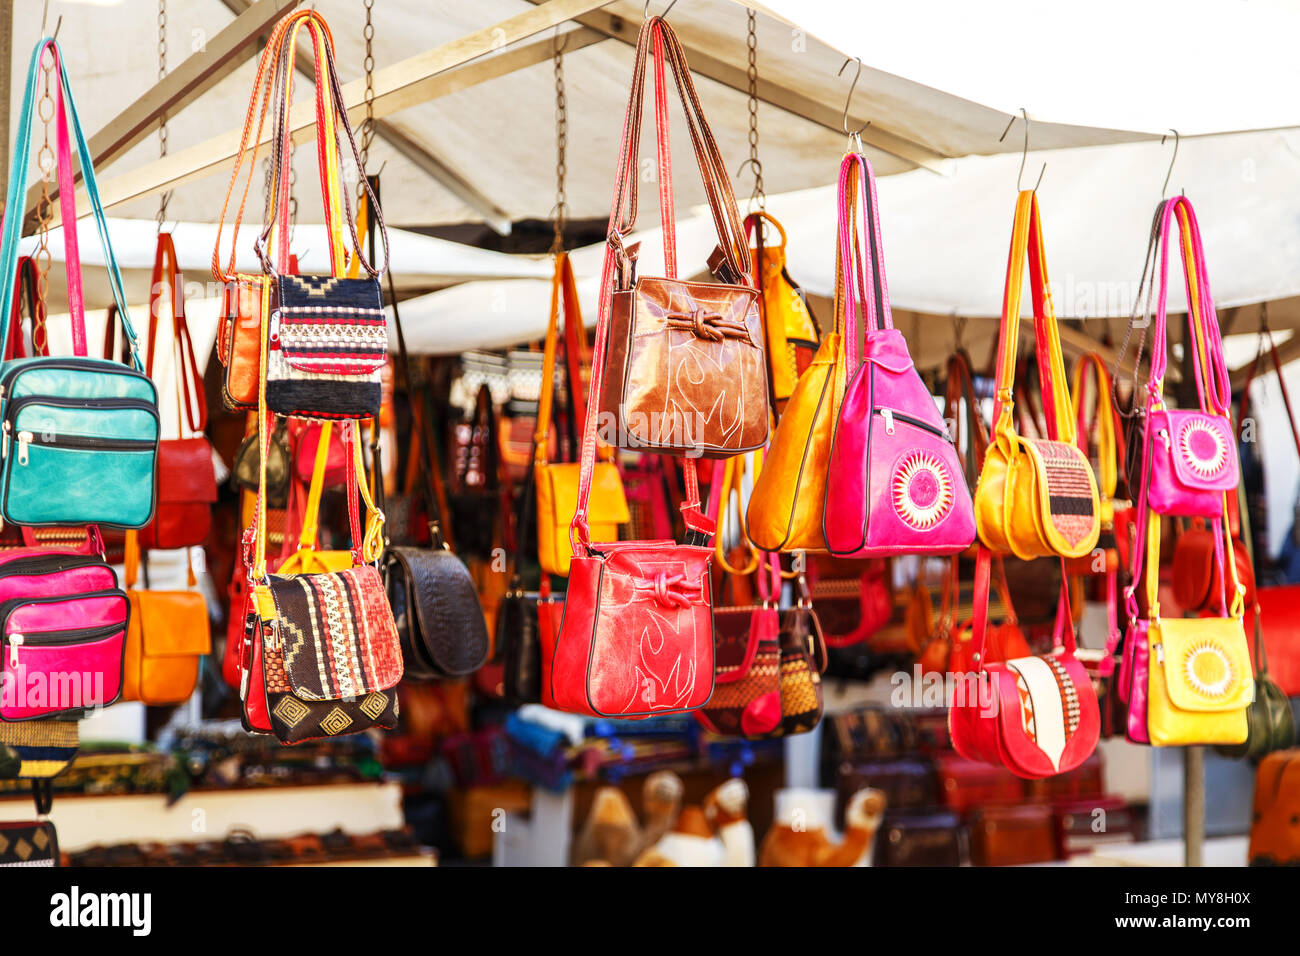 Leather and textile bags in tunisian market, Sidi Bou Said, Tunisia ...